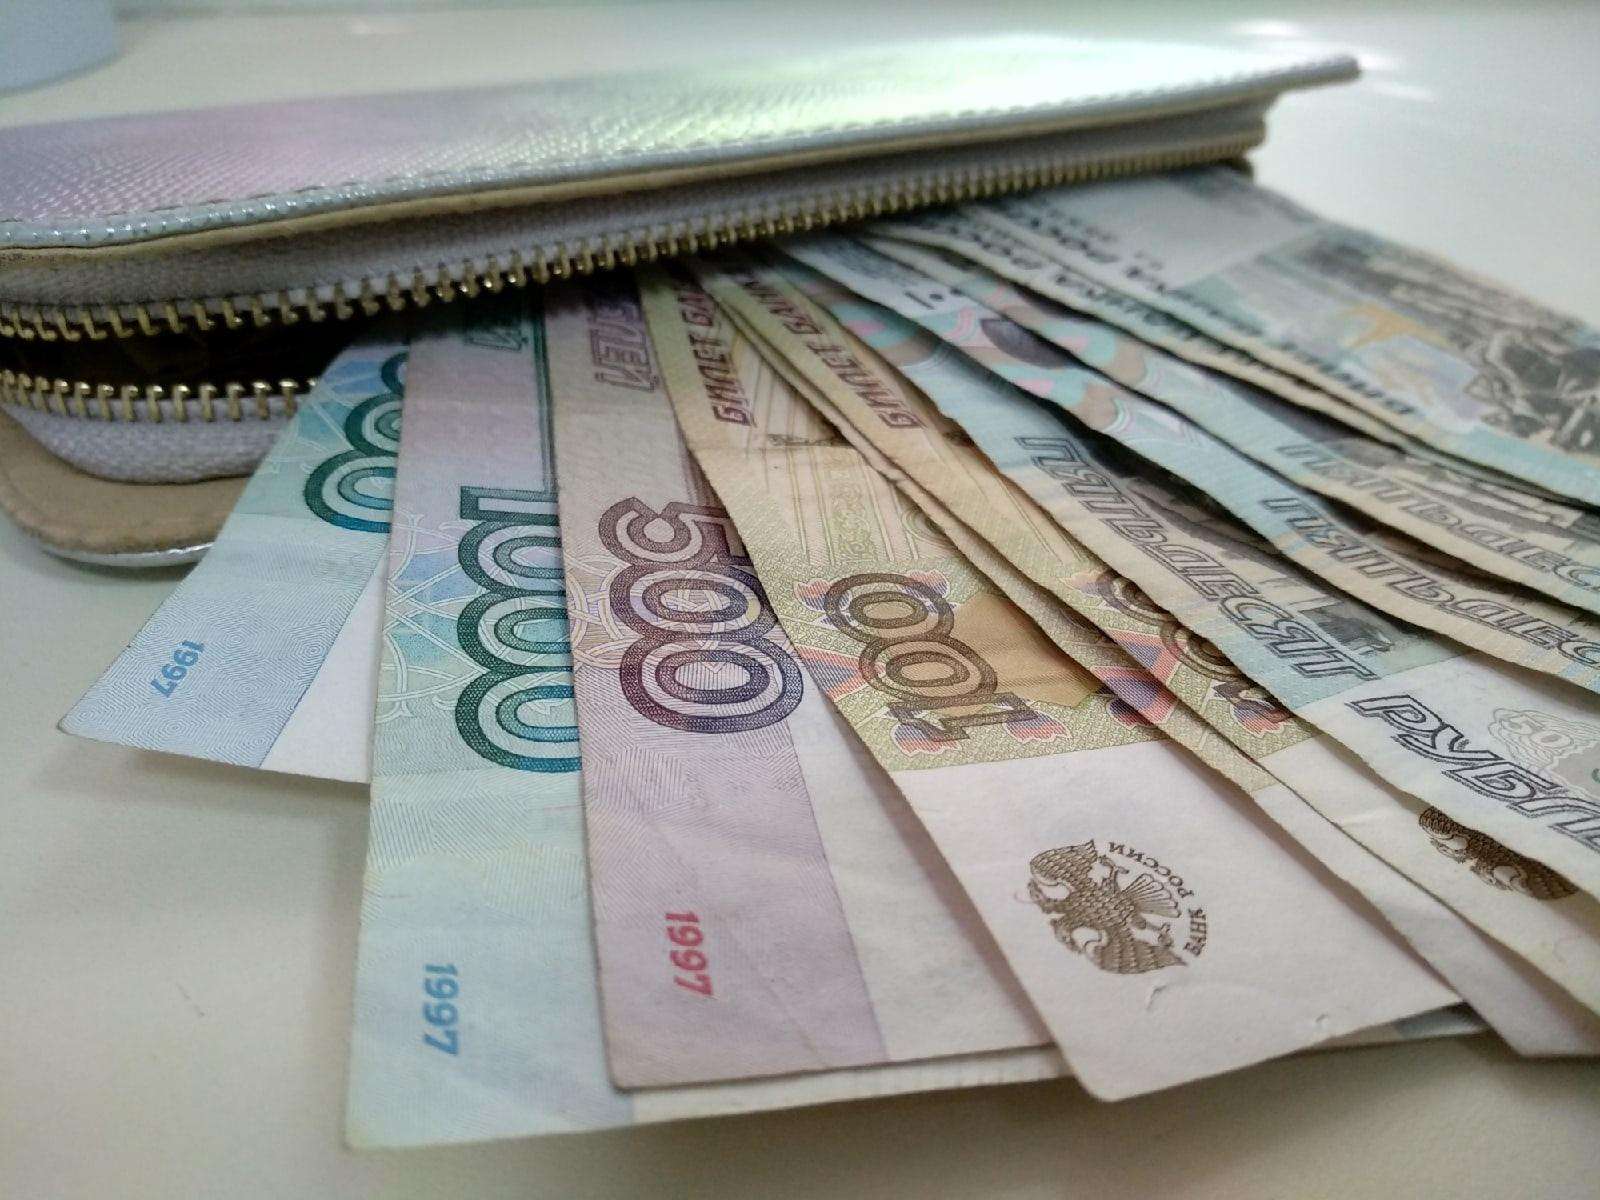   Медианная заработная плата в Бердске составила 26 333 рубля 